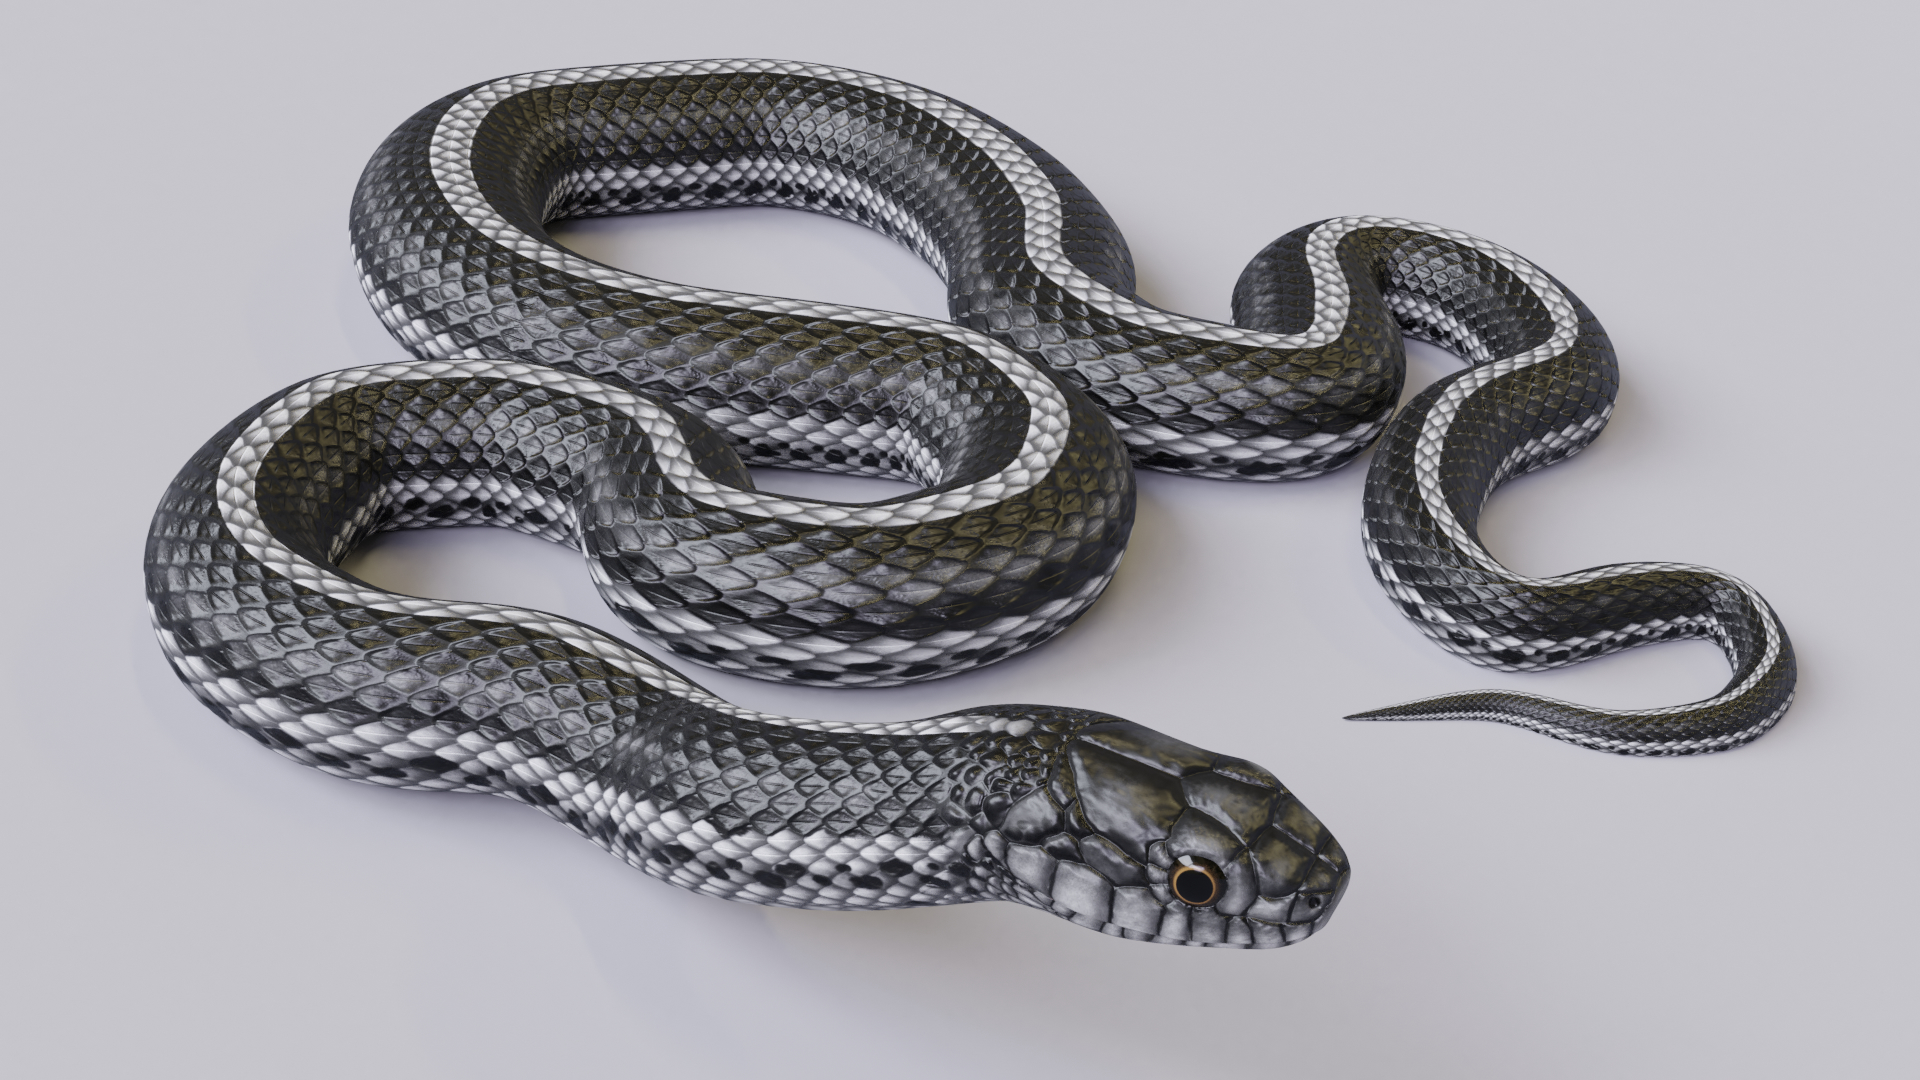 黑眉锦蛇-标本图片库-武陵山区生物多样性综合科学考察